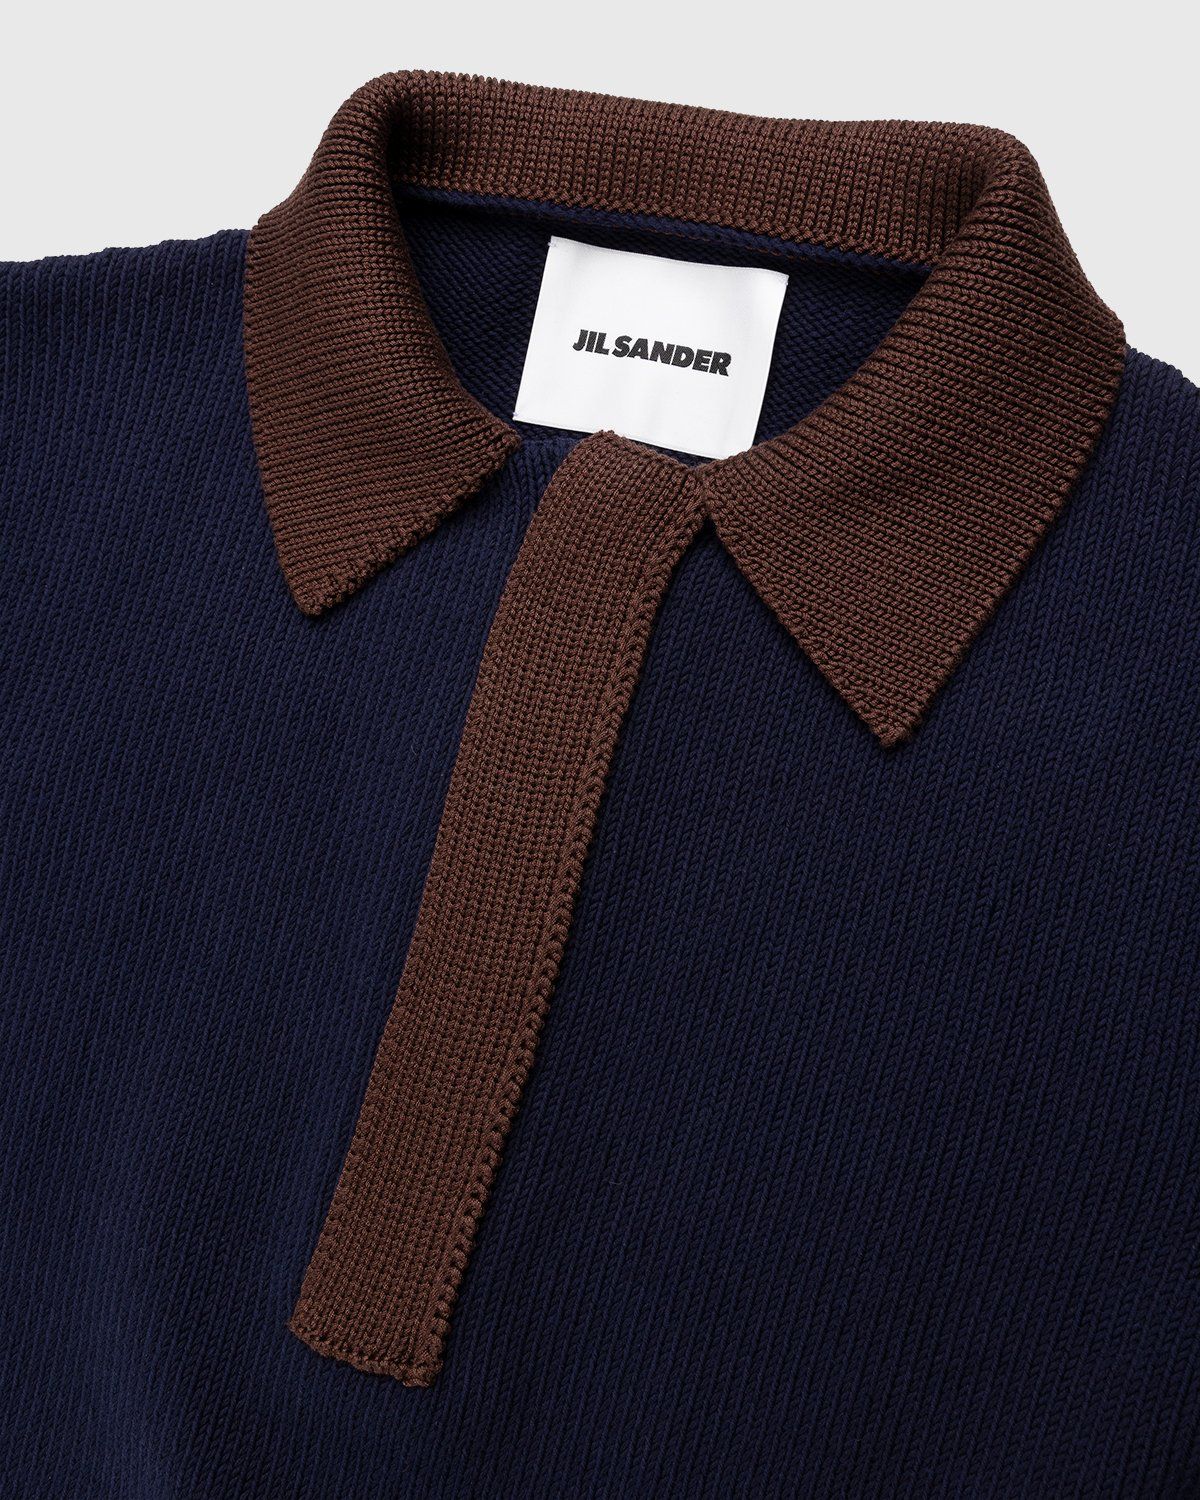 Jil Sander – Short Sleeve Knit Shirt Dark Blue - Shirts - Blue - Image 4